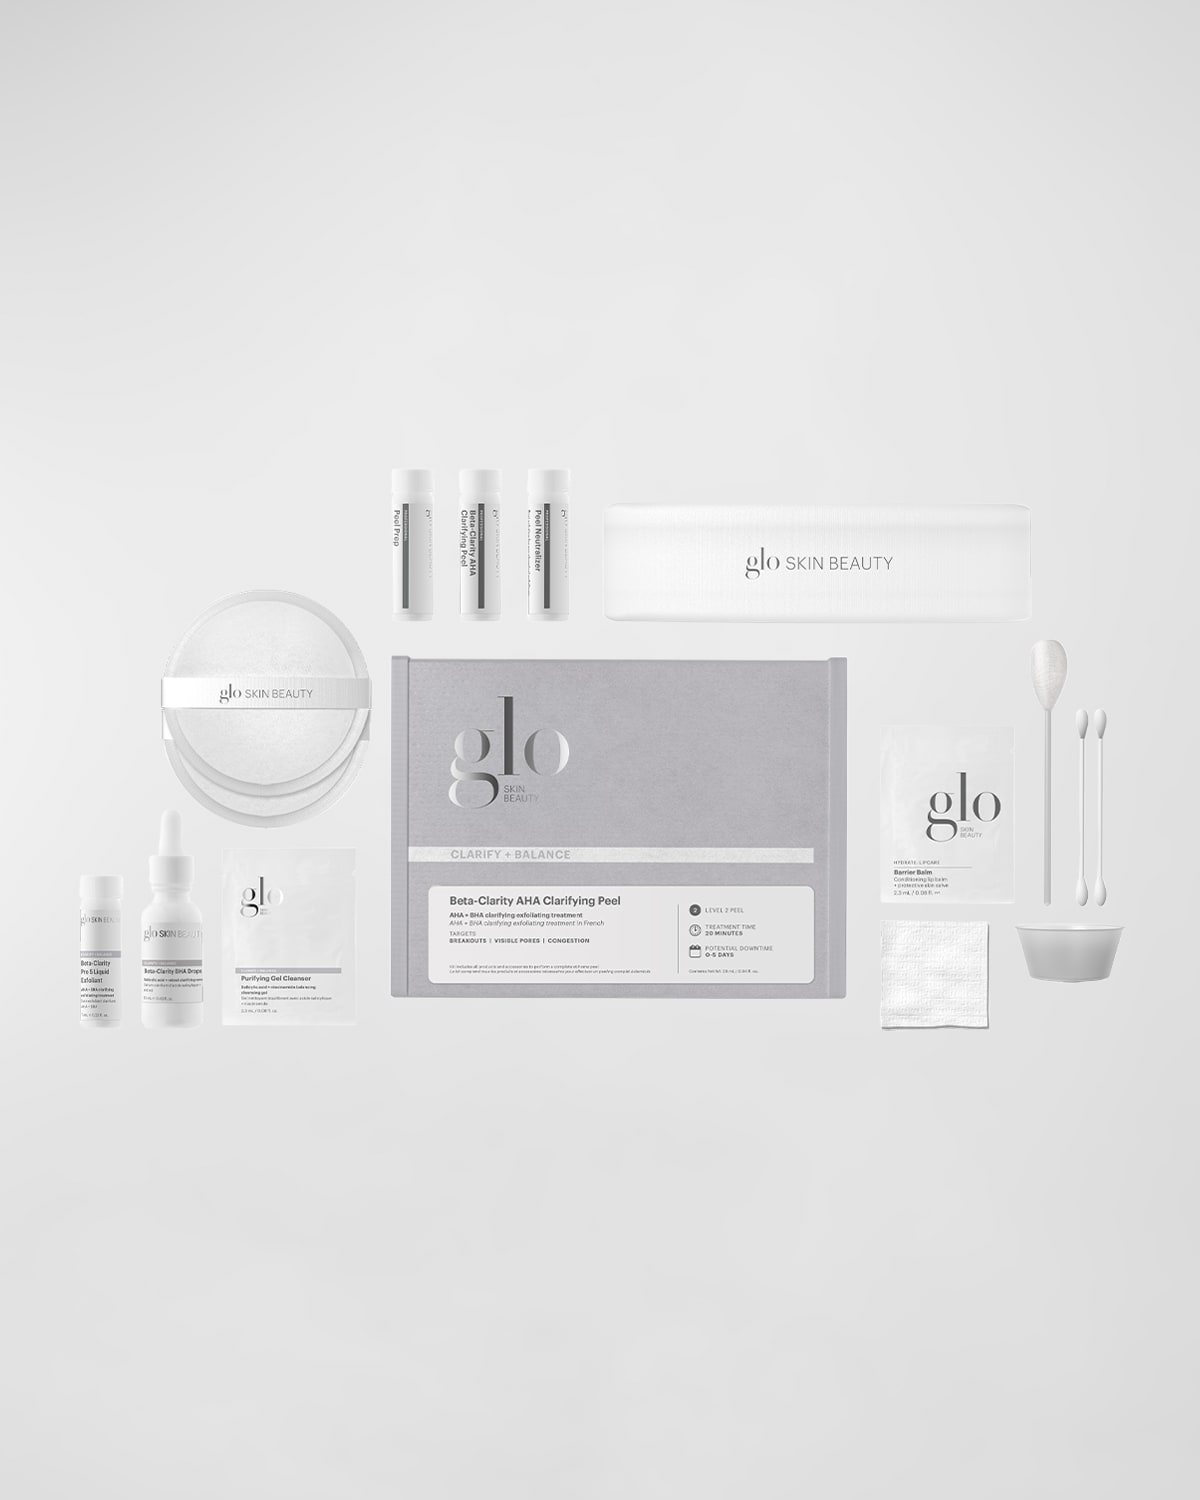 Glo Skin Beauty Beta-Clarity AHA Clarifying Peel Kit